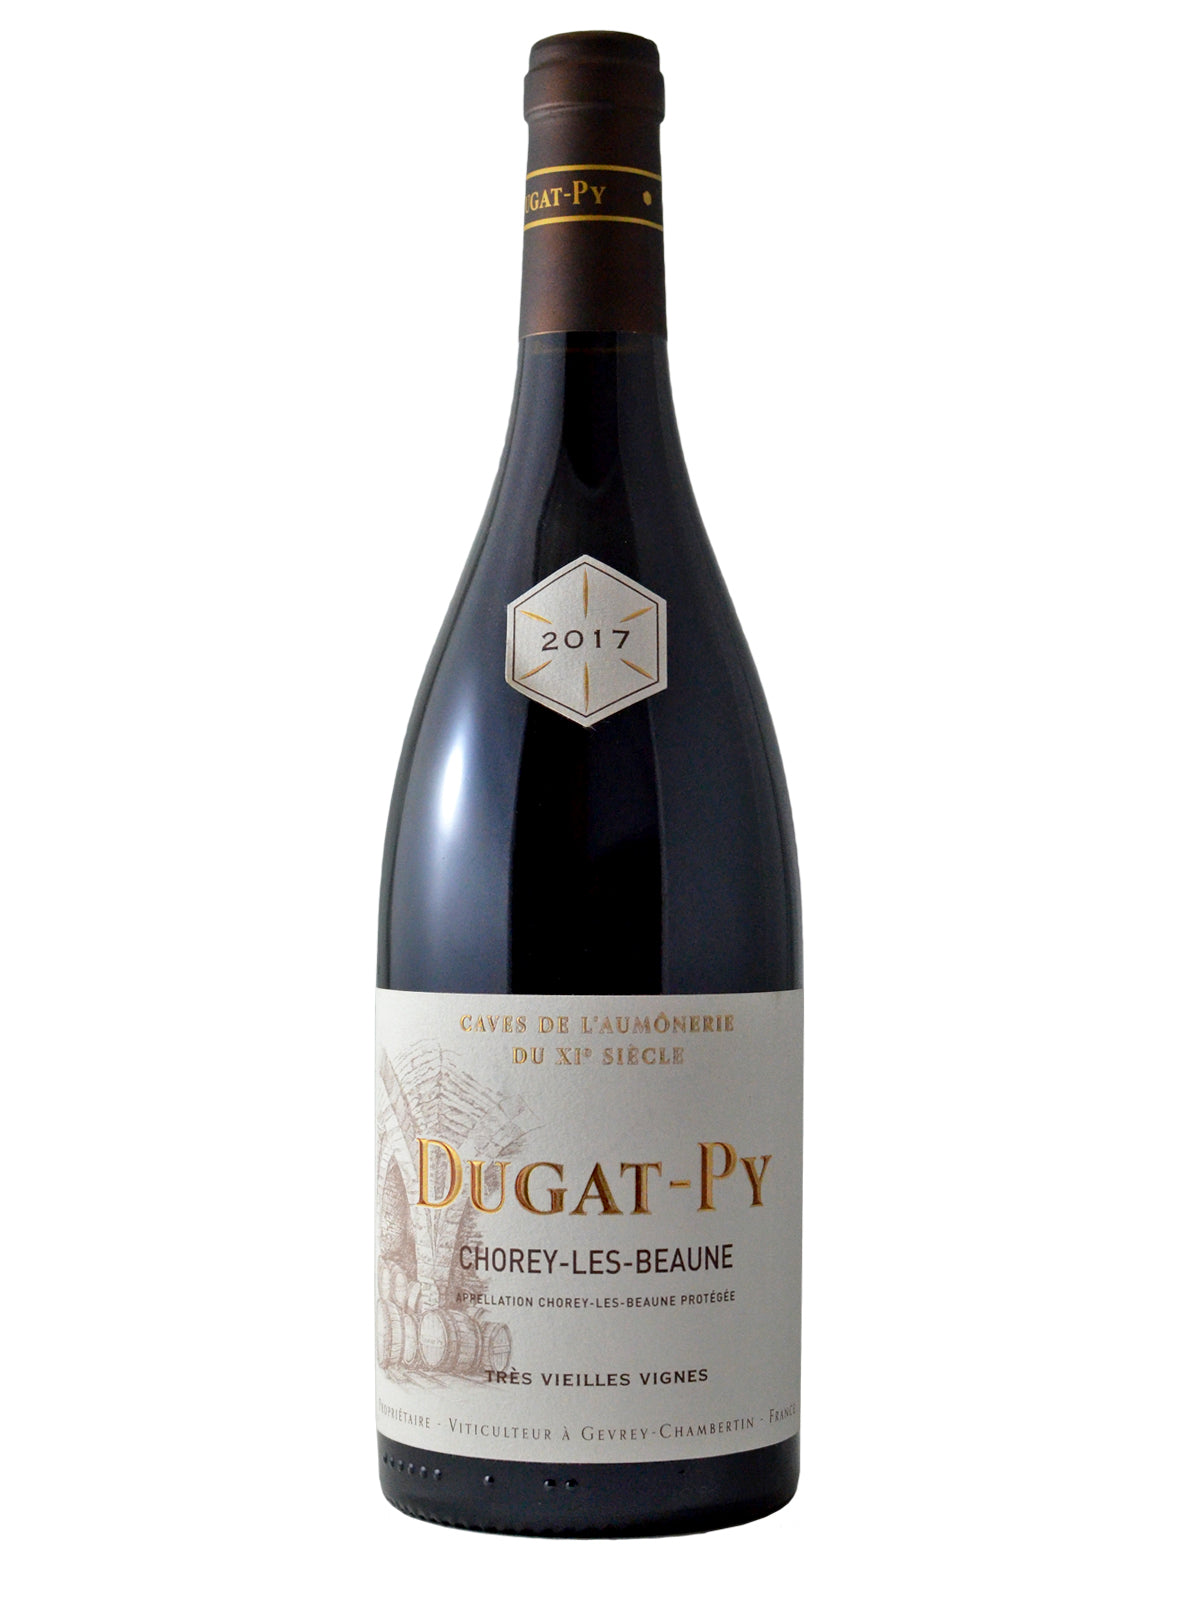 Dugat-Py, 2017 "Vieilles Vignes" Chorey-Les-Beaune